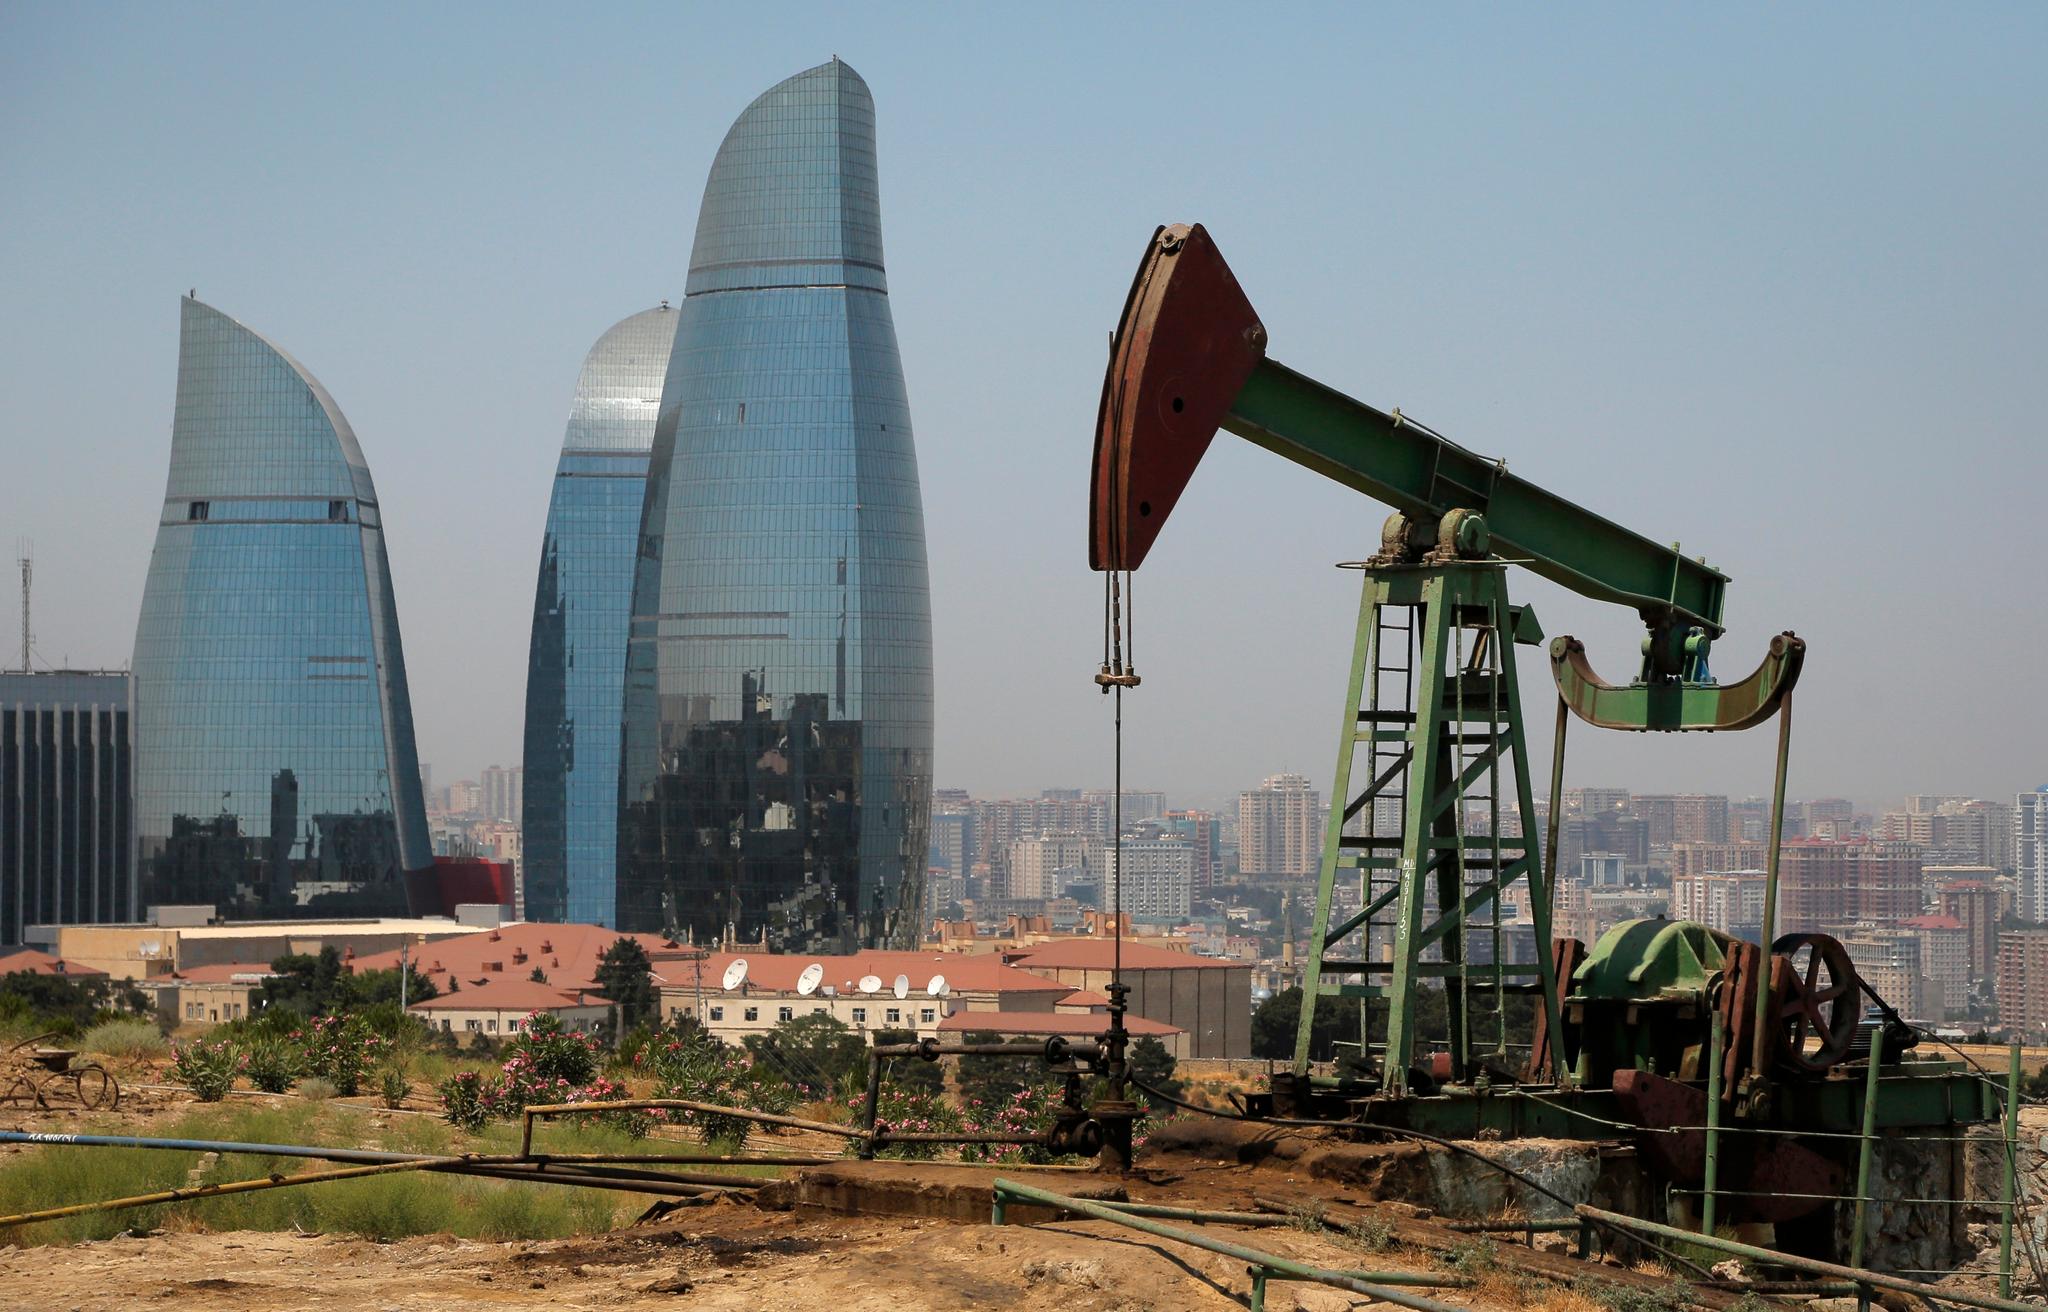 Den tidligere Sovjetrepublikken Aserbajdsjan er rik på olje og gass, men skal også være ett av verdens mest korrupte ifølge organisasjonen Transparency International.